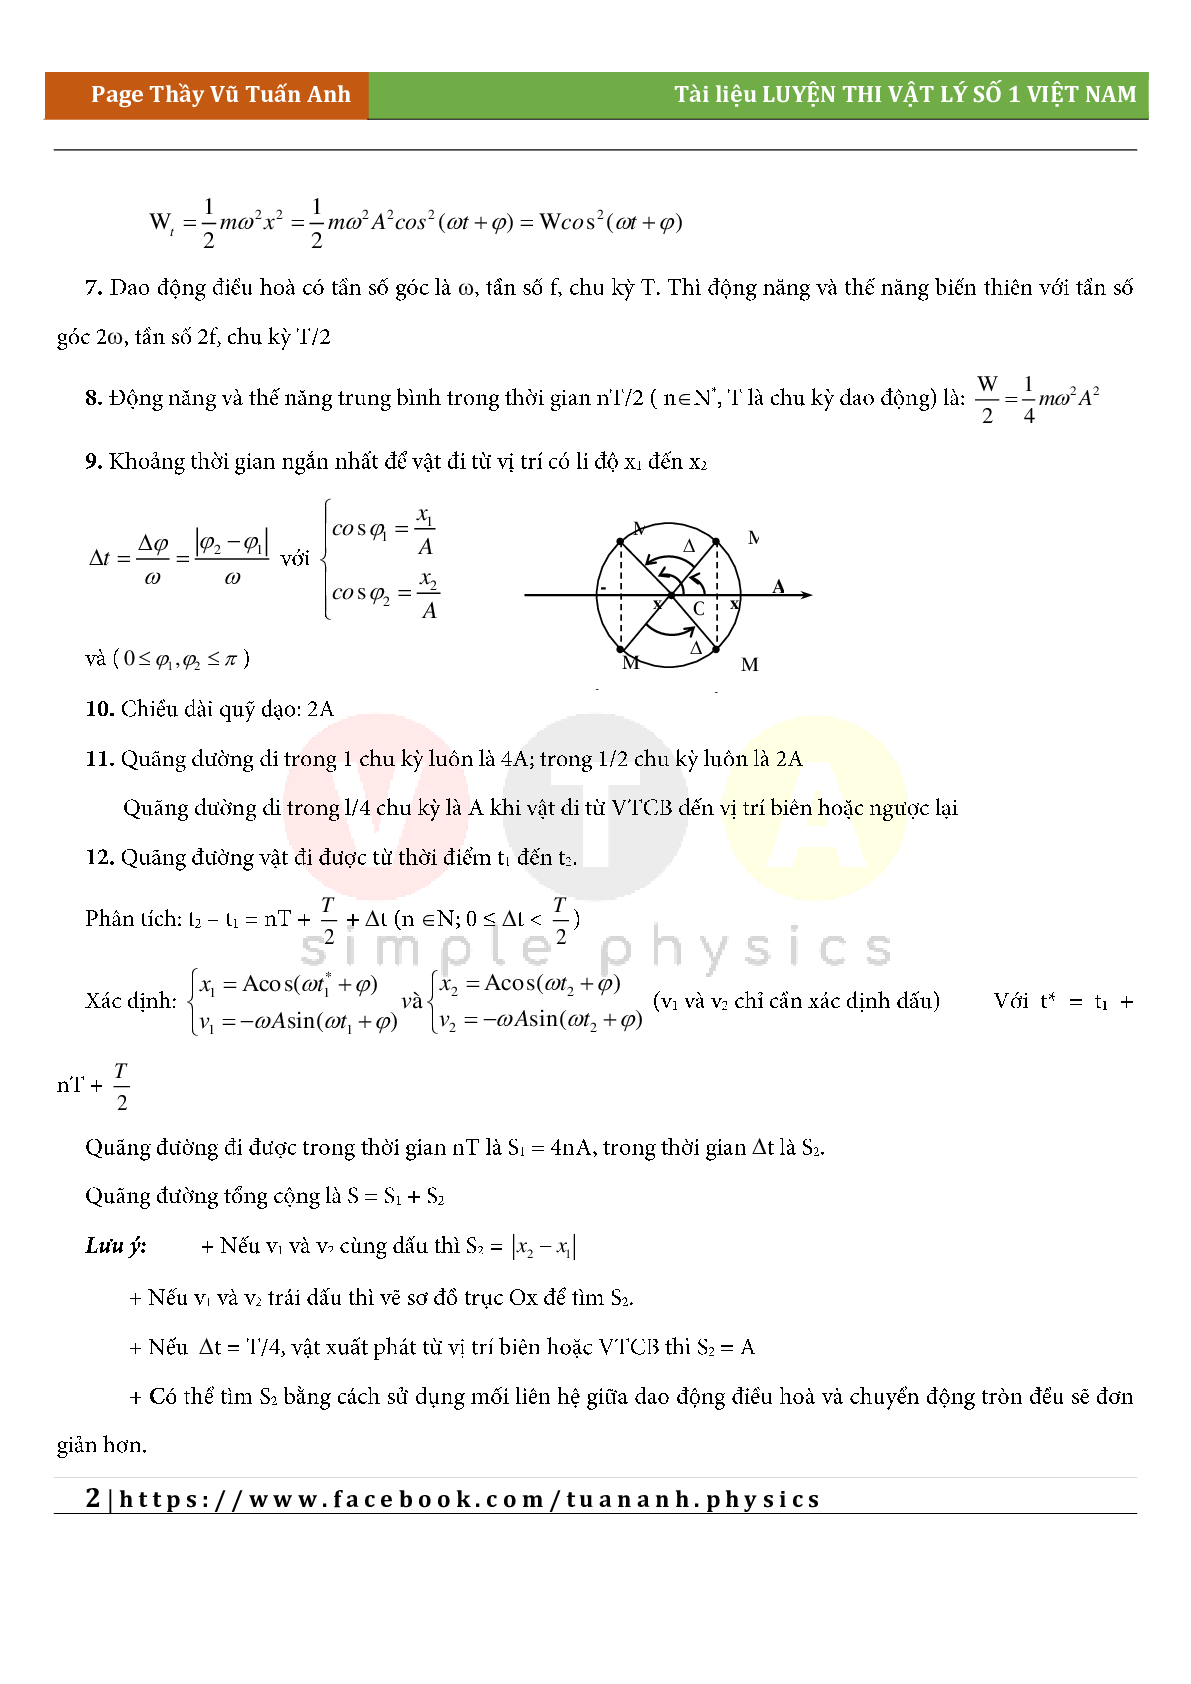 Công thức giải siêu nhanh môn Vật lý lớp 12 cả năm (trang 2)